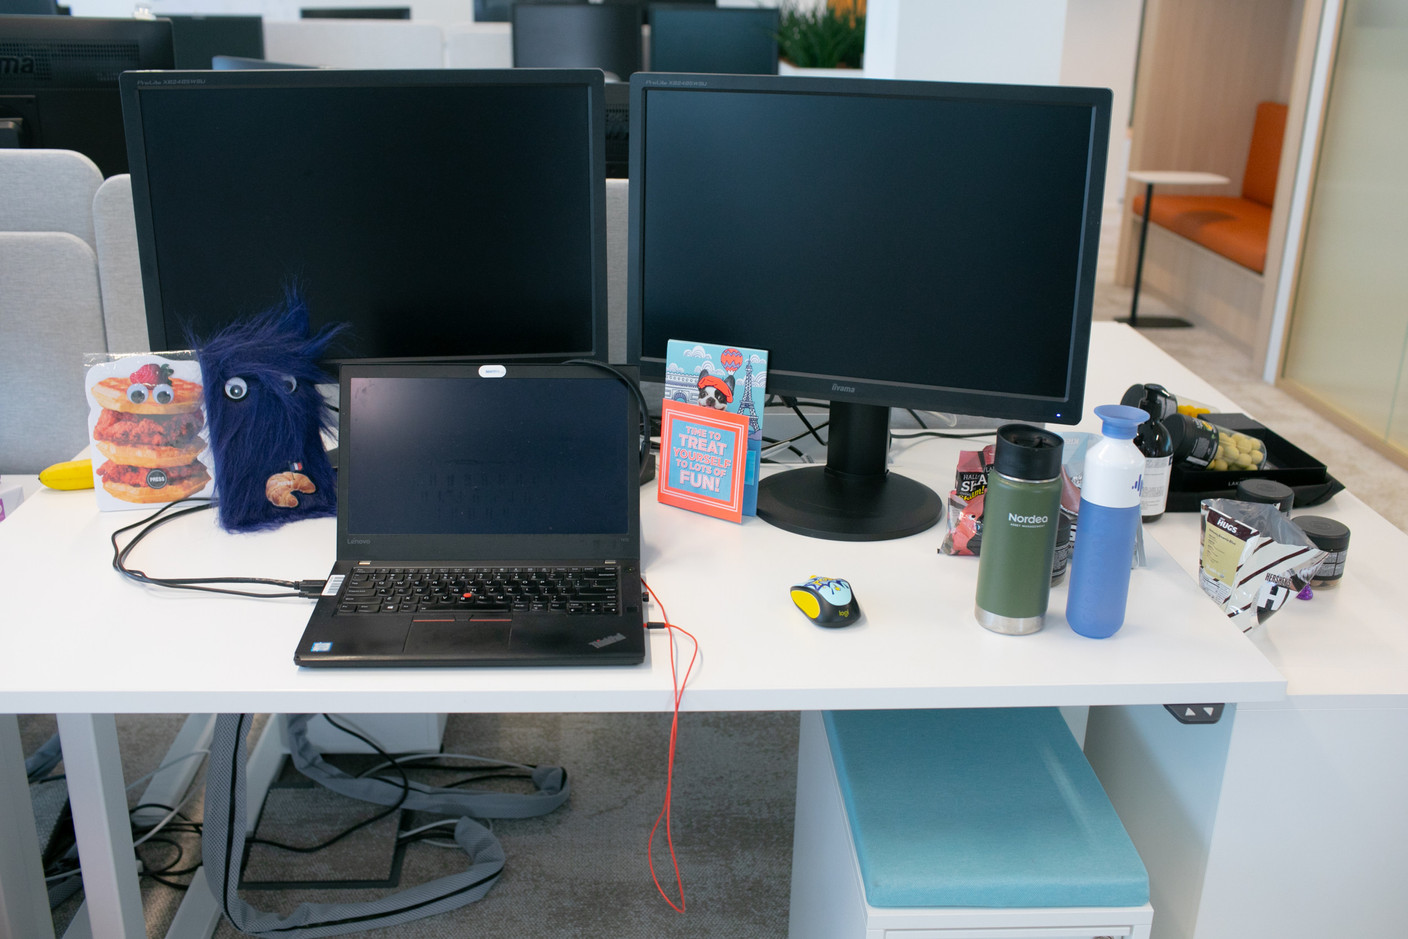 Atlanta Inno - How Atlanta startup herdesk designed an office desk for women